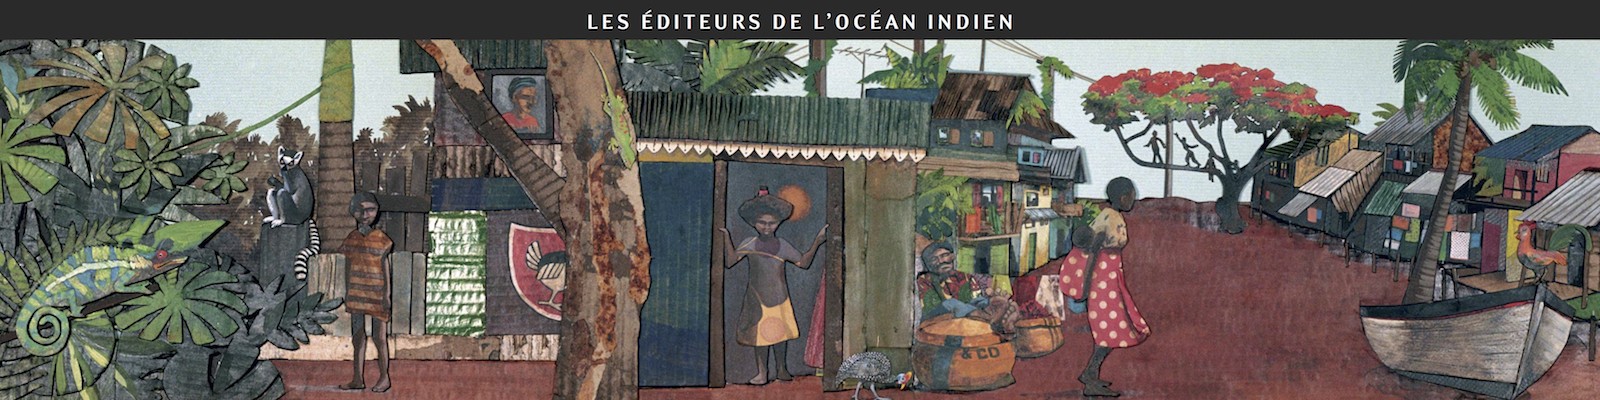 Les éditeurs de l'océan Indien au Salon du livre jeunesse de Fougères 2011 - Dessin d'Aurélie Moynot